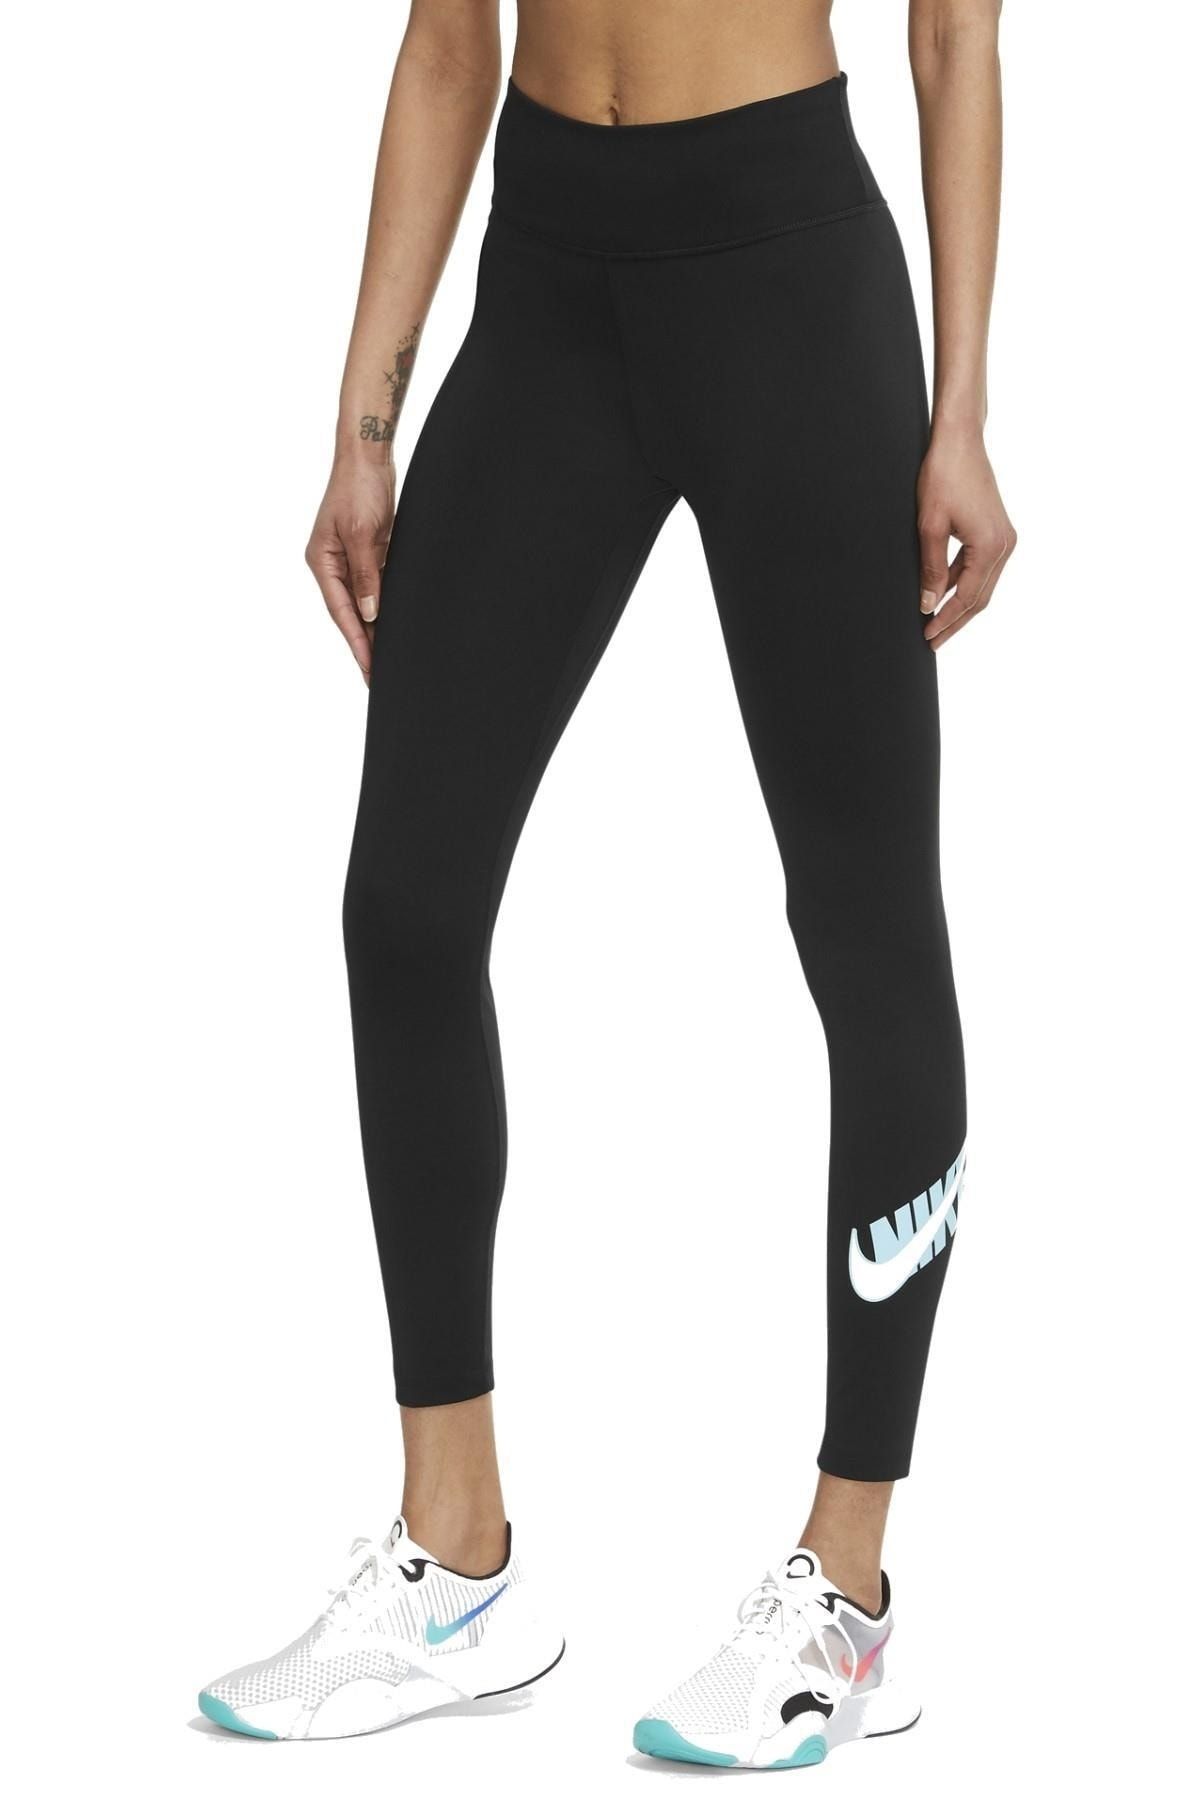 Nike One Performance 7/8 Leggings Dri-fit Black Leggings with Inner Pocket  - Trendyol